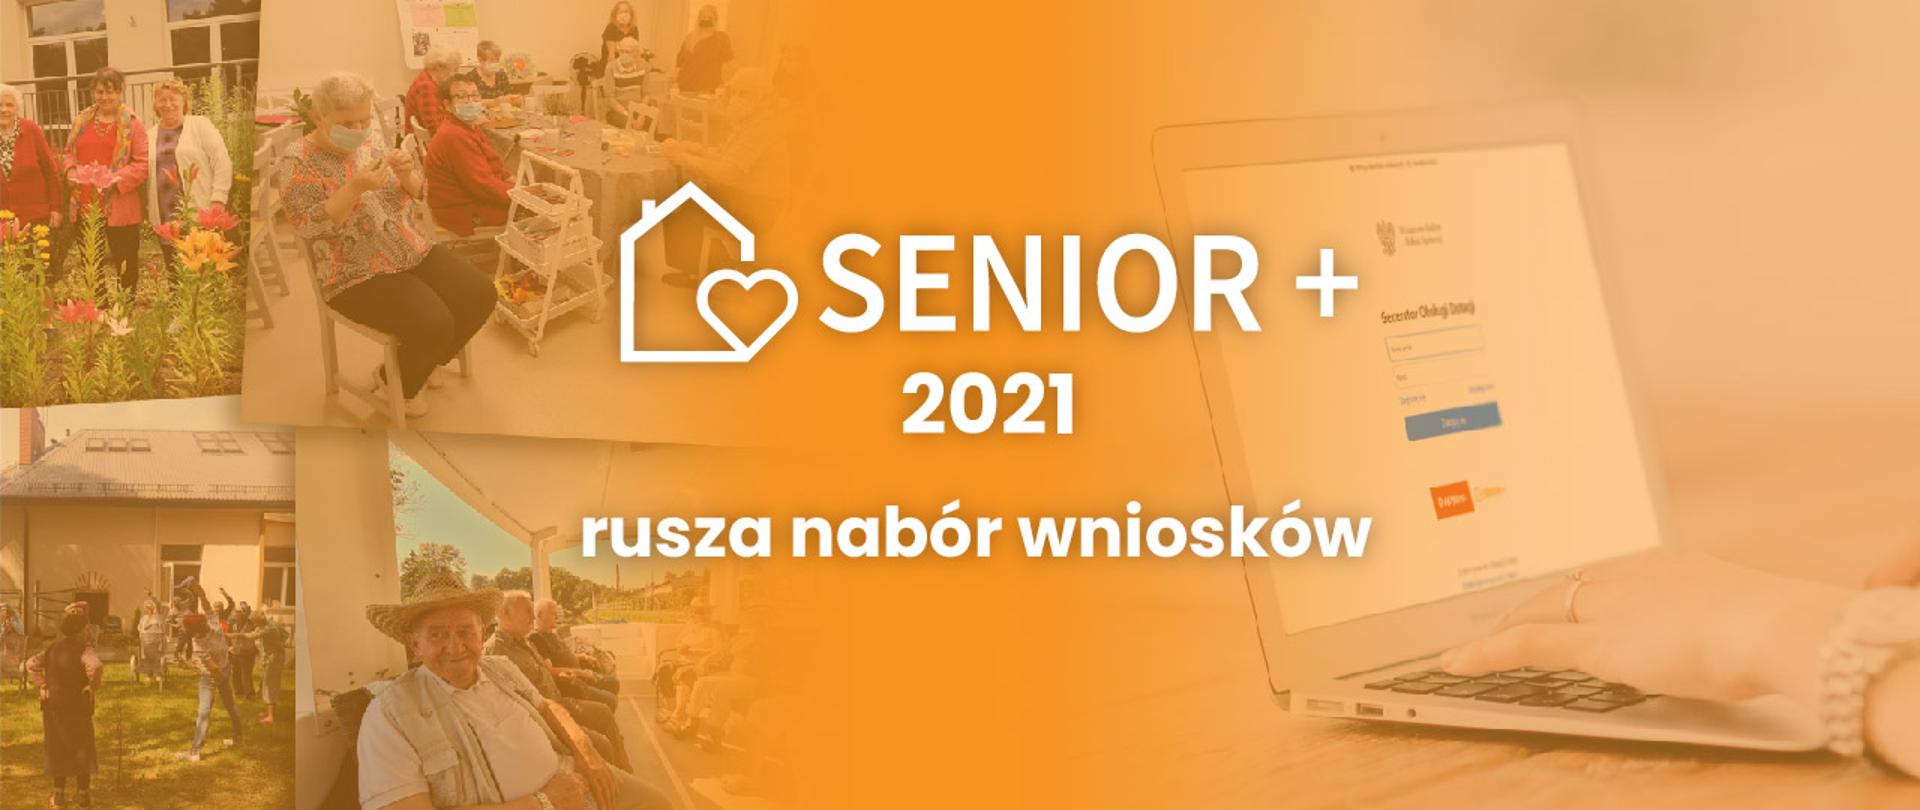 Nabór wniosków senior+ 2021